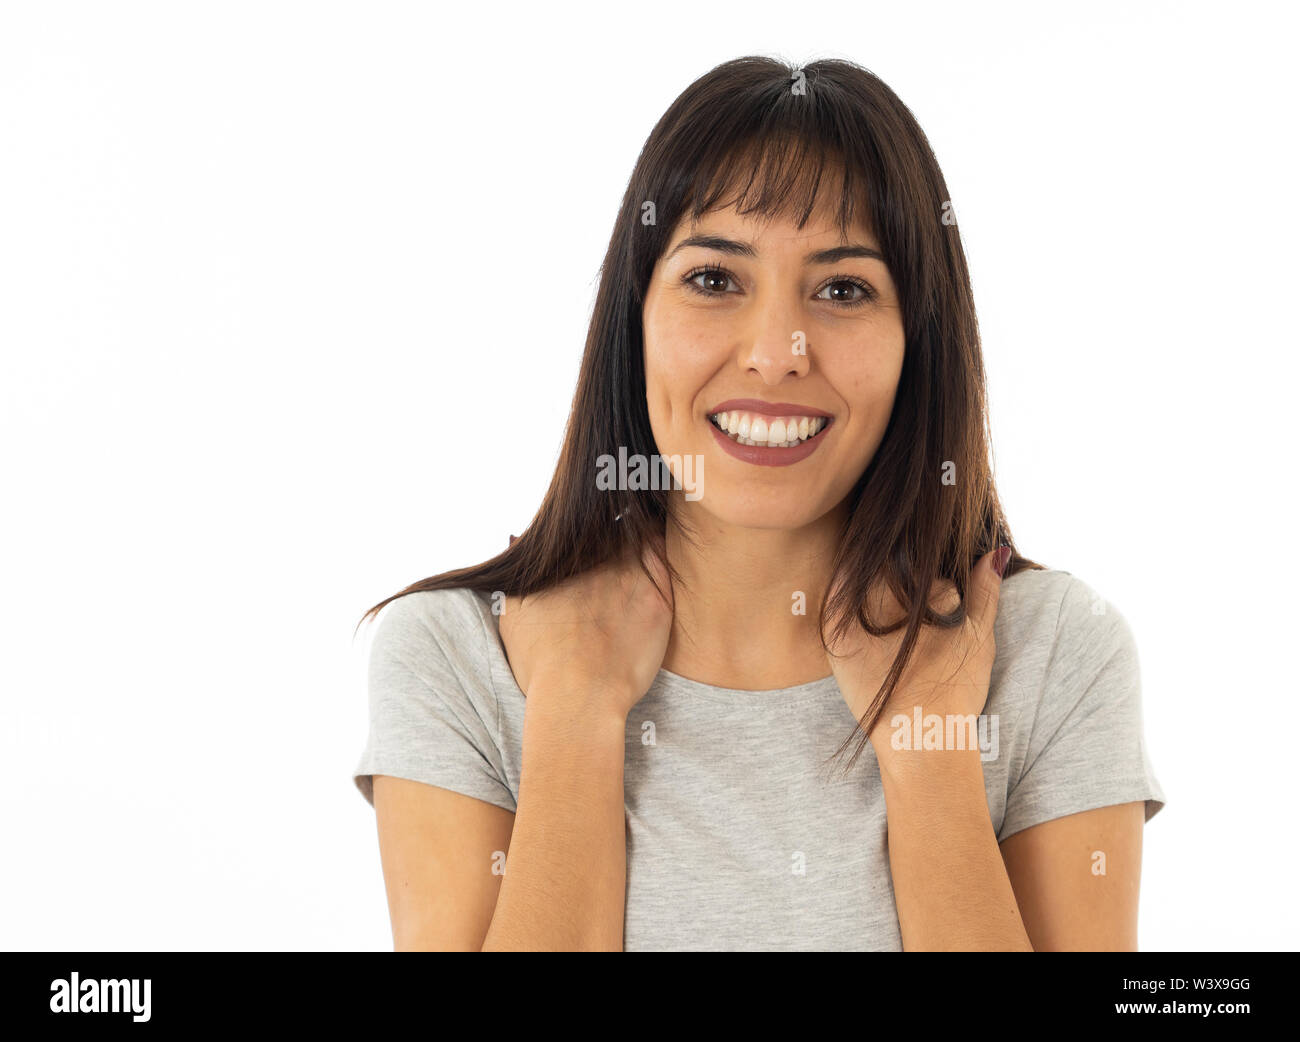 Portrait von attraktiven jungen kaukasischen Frau mit glücklichen Gesicht und schönes Lächeln. Auf neutralem Hintergrund In die Menschen isoliert, positiven menschlichen Gesichts ausdr Stockfoto